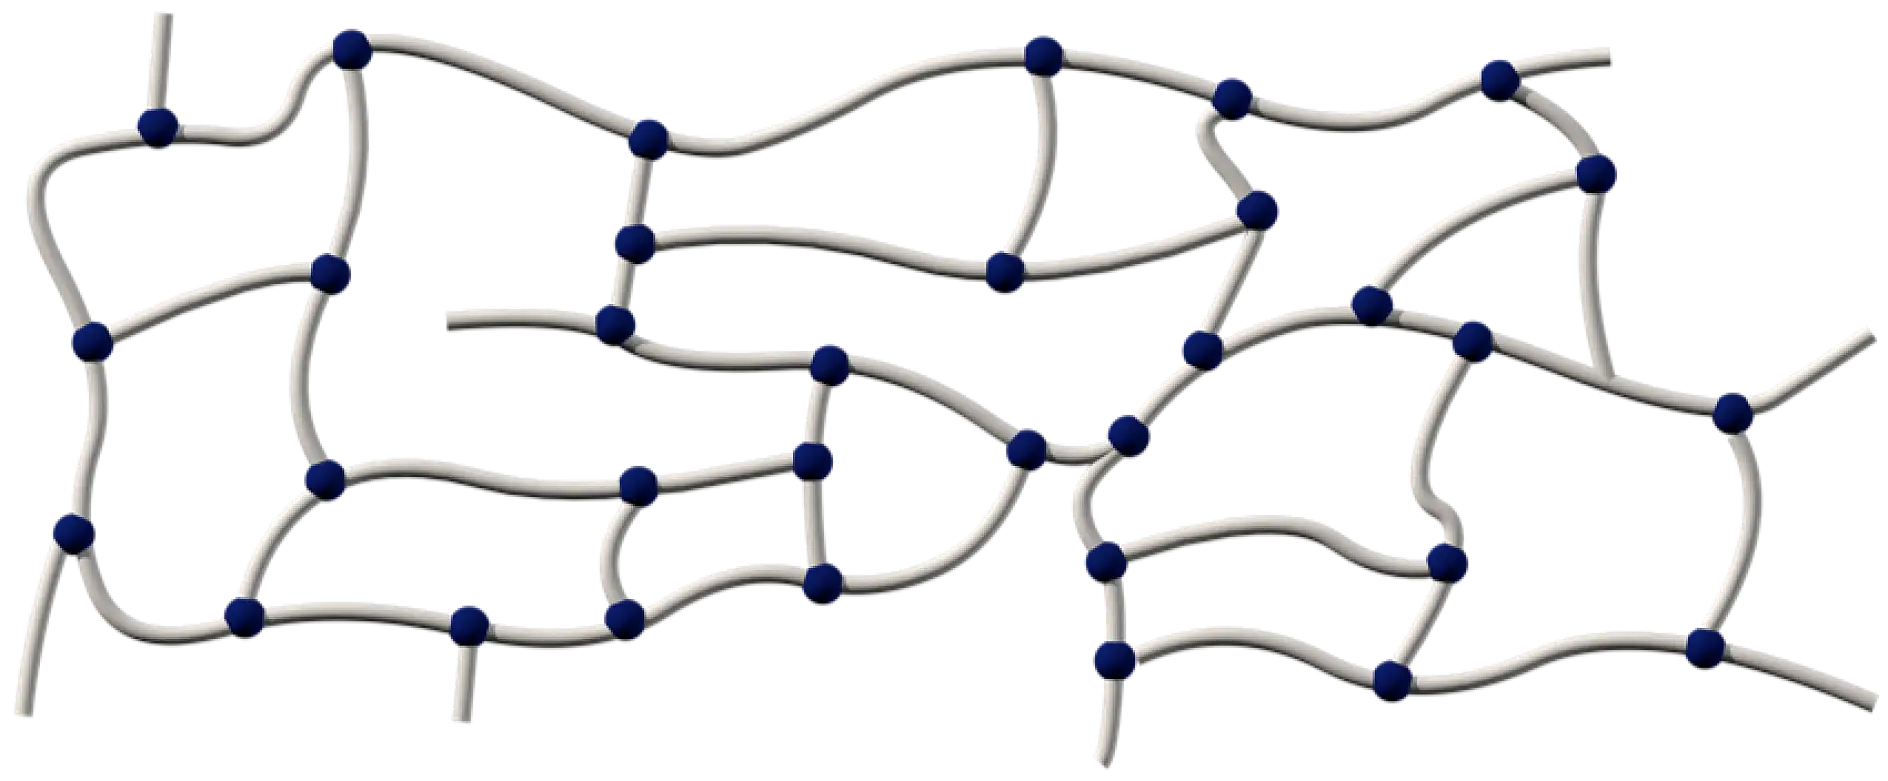 Chất kết dính acrylic gồm các chuỗi polyme được liên kết chéo với nhau bằng các phương pháp khác nhau: hóa học, bằng bức xạ tia cực tím, hoặc bằng quá trình cứng hóa chùm tia điện tử